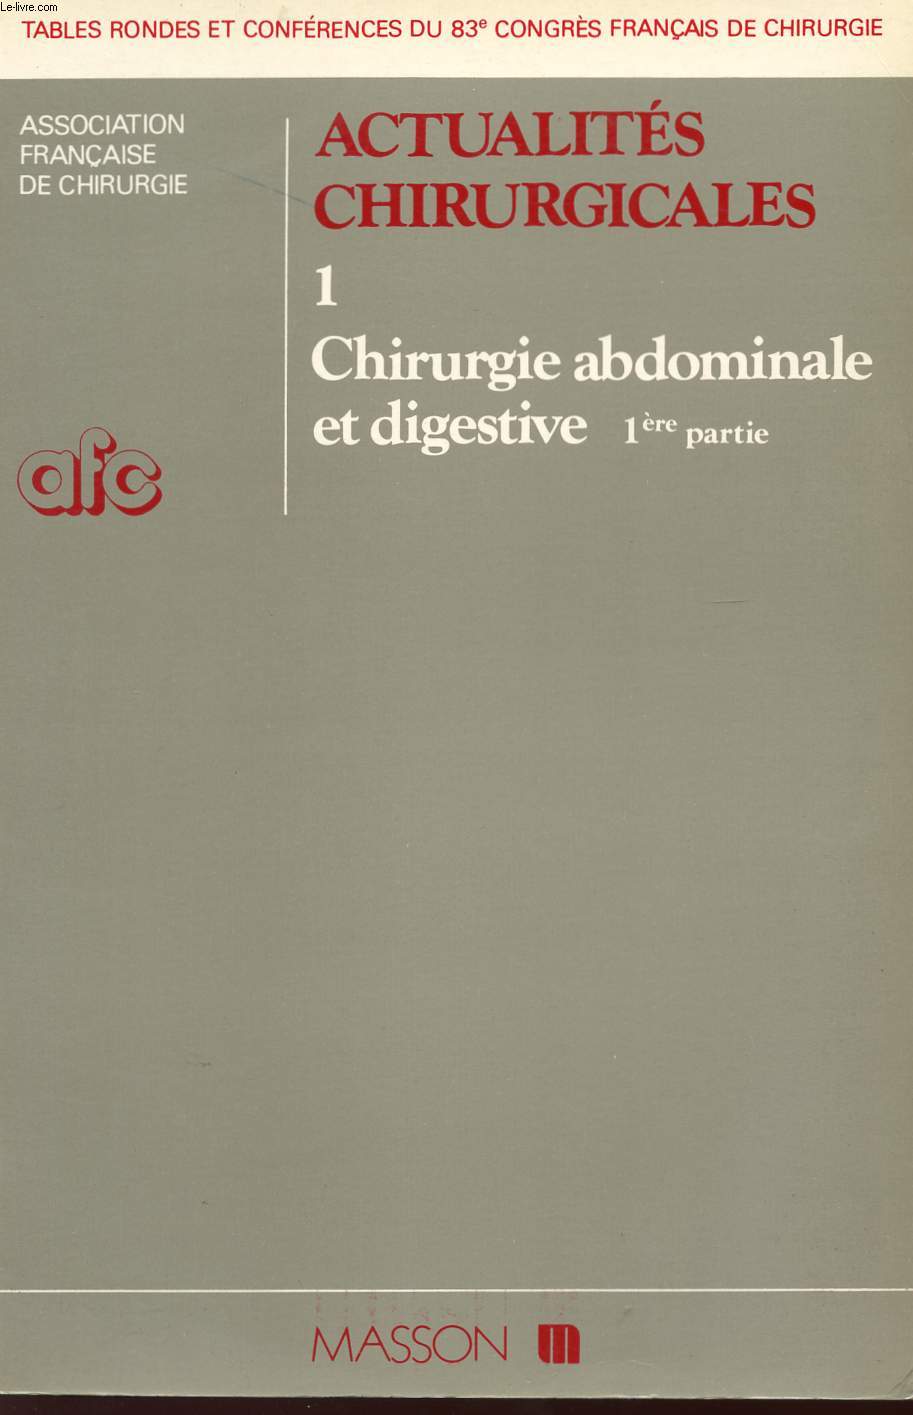 ACTUALITES CHIRURGICALES - TOME 1 - CHIRURGIE ABDOMINALE ET DIGESTIVE - PREMIERE PARTIE - 83 CONGRE FRANCAIS DE CHIRURGIE.